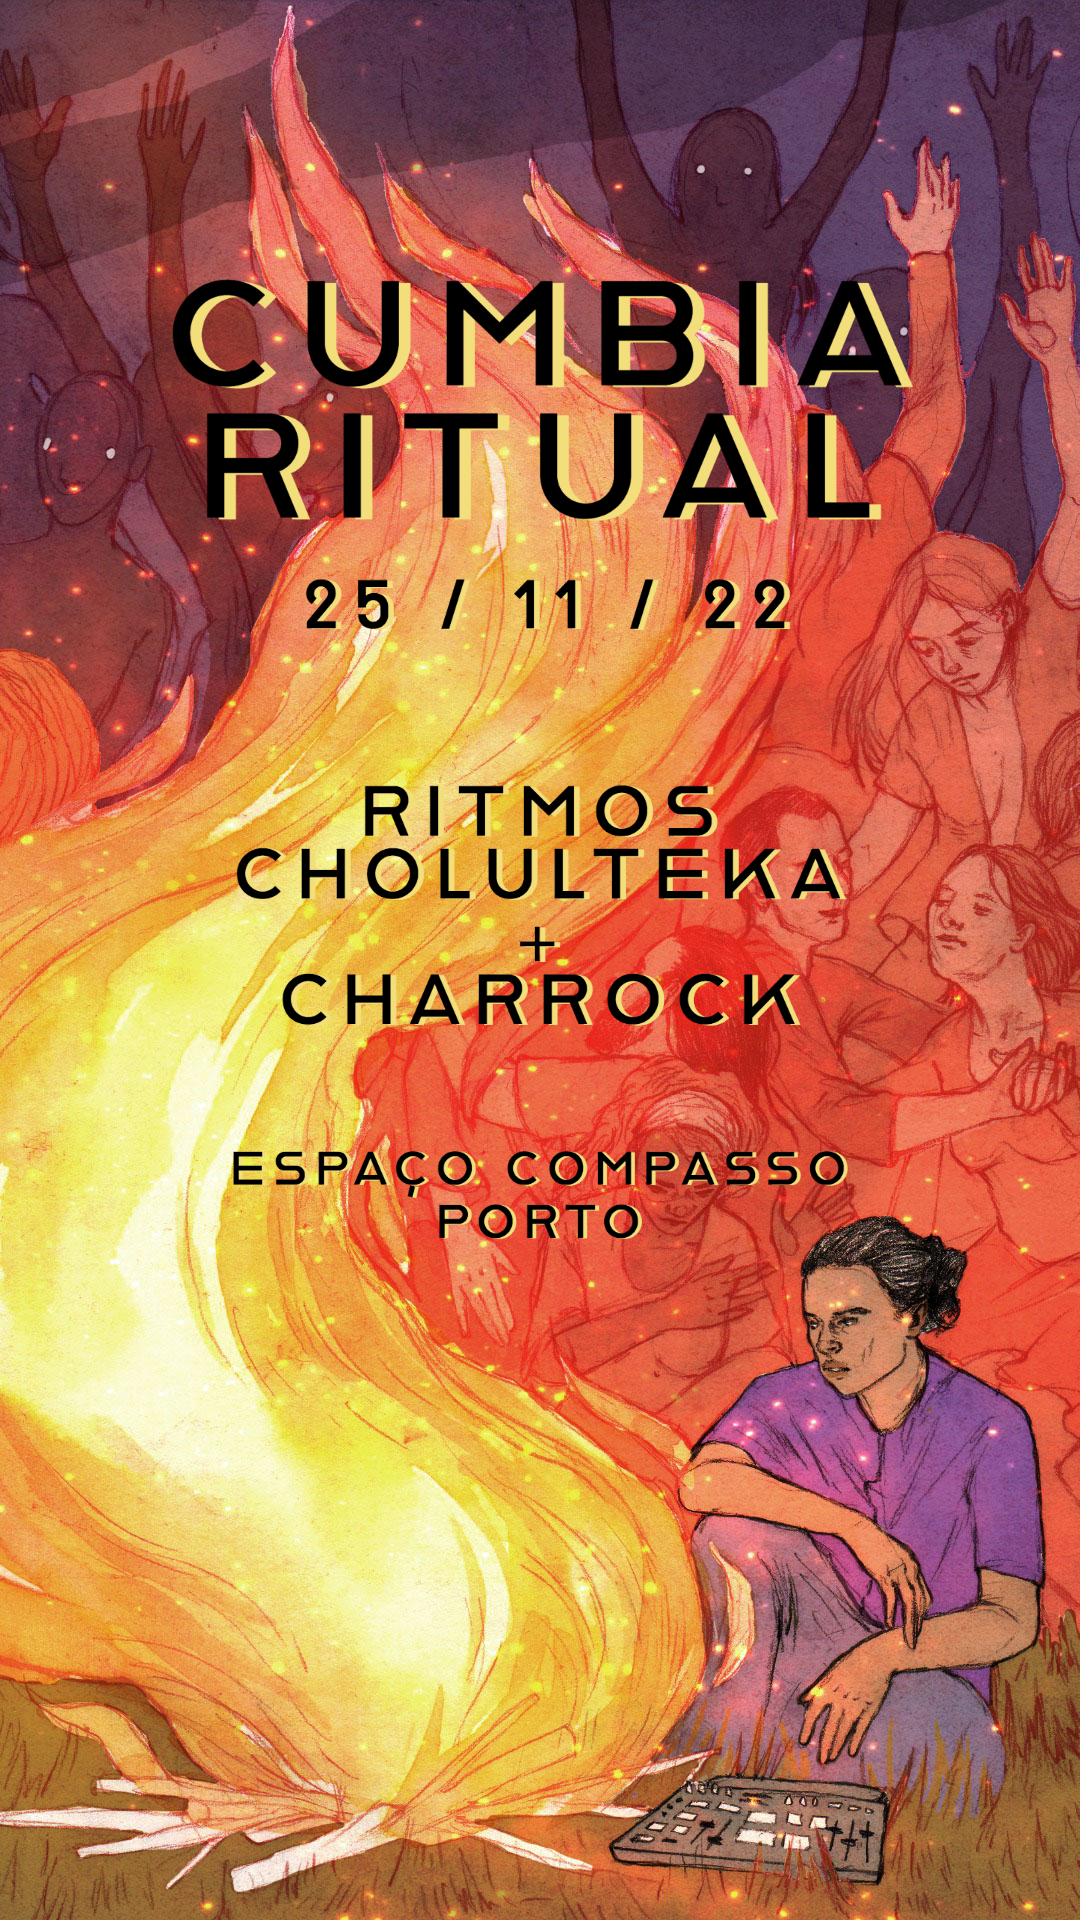 CUMBIA RITUAL II Ritmos Cholulteka II Charrock II